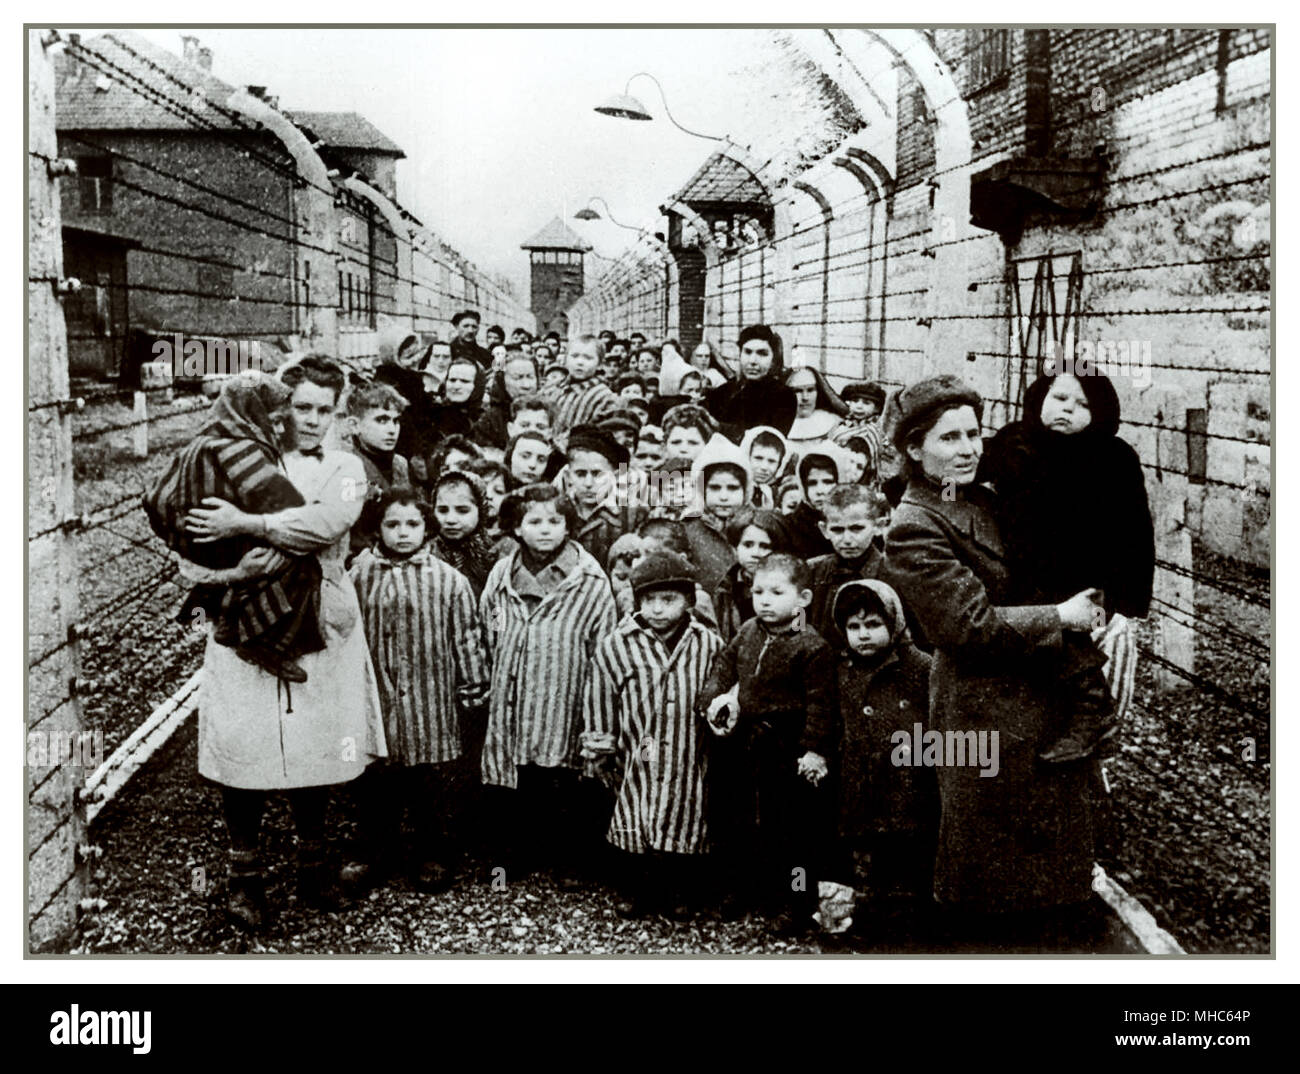 AUSCHWITZ KINDER ÜBERLEBENDE HÄFTLINGE BABYS UND FRAUEN GESTREIFTE LAGERUNIFORMEN BEFREIUNG verschlossen durch Strecken elektrifizierten Stacheldrahts und Wachposten, die ohne Emotionen auf ihre Befreier starren. Ein noch immer grausamer Horror aus dem Konzentrationslager Auschwitz Birkenau. Freiheitsdatum 27. Januar 1945. Stockfoto